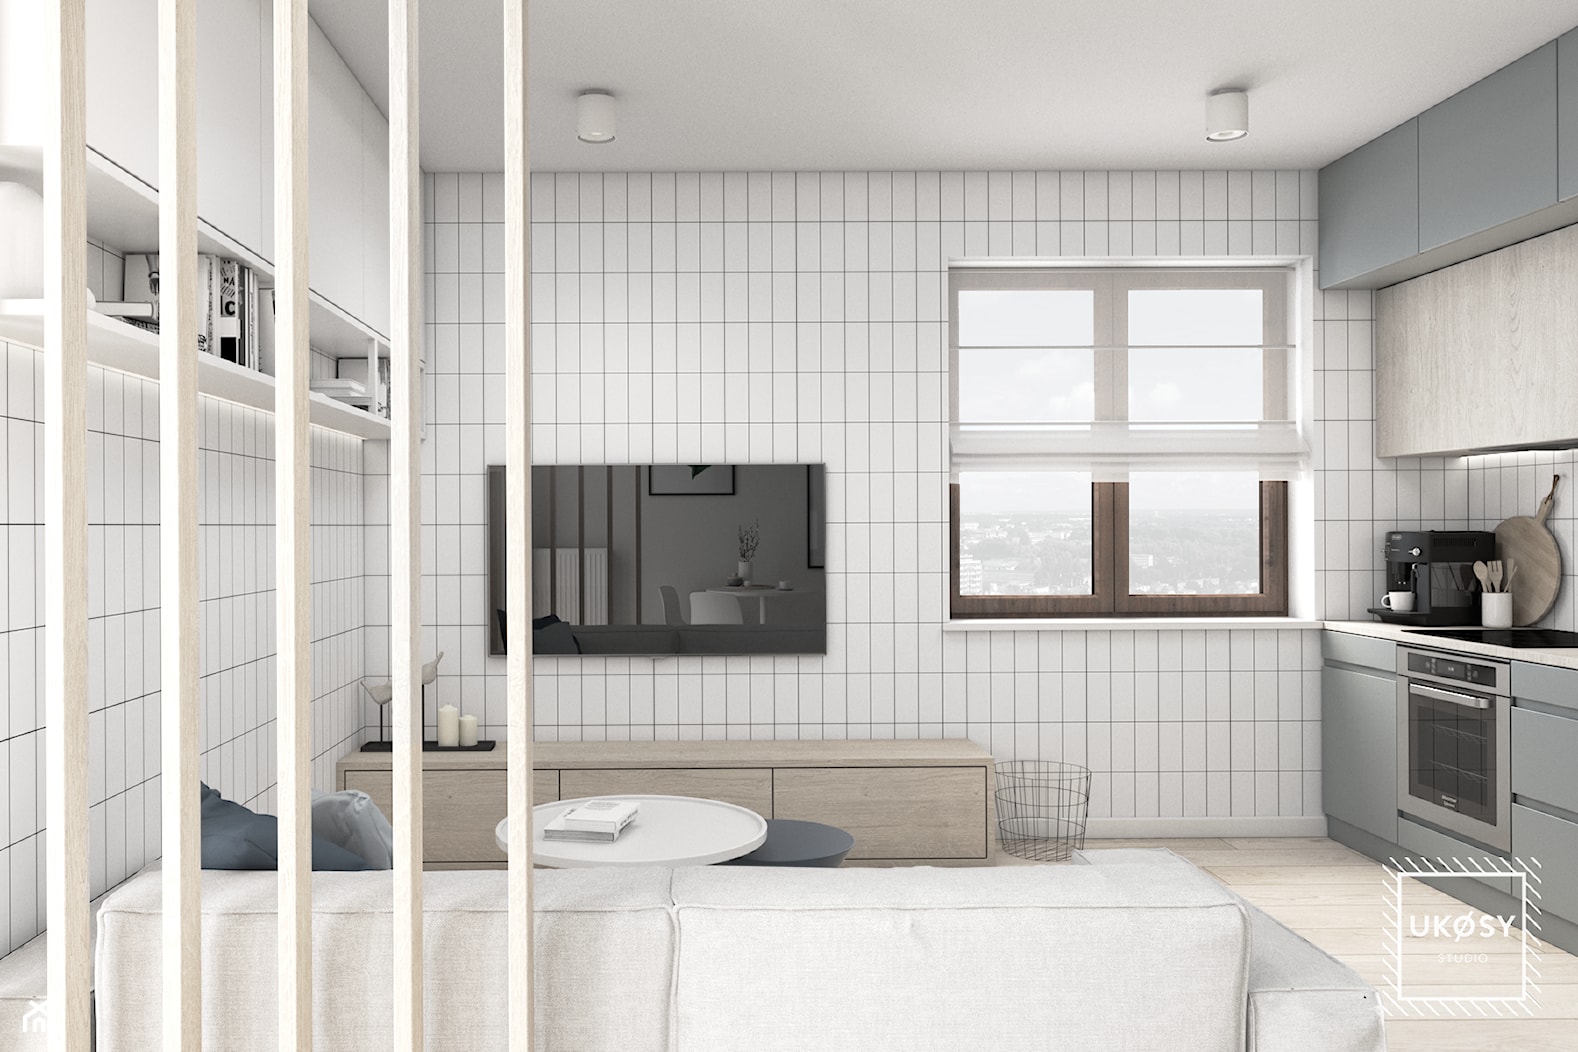 MIESZKANIE 40m2 - Mały szary salon z kuchnią, styl minimalistyczny - zdjęcie od UKOSY studio - Homebook